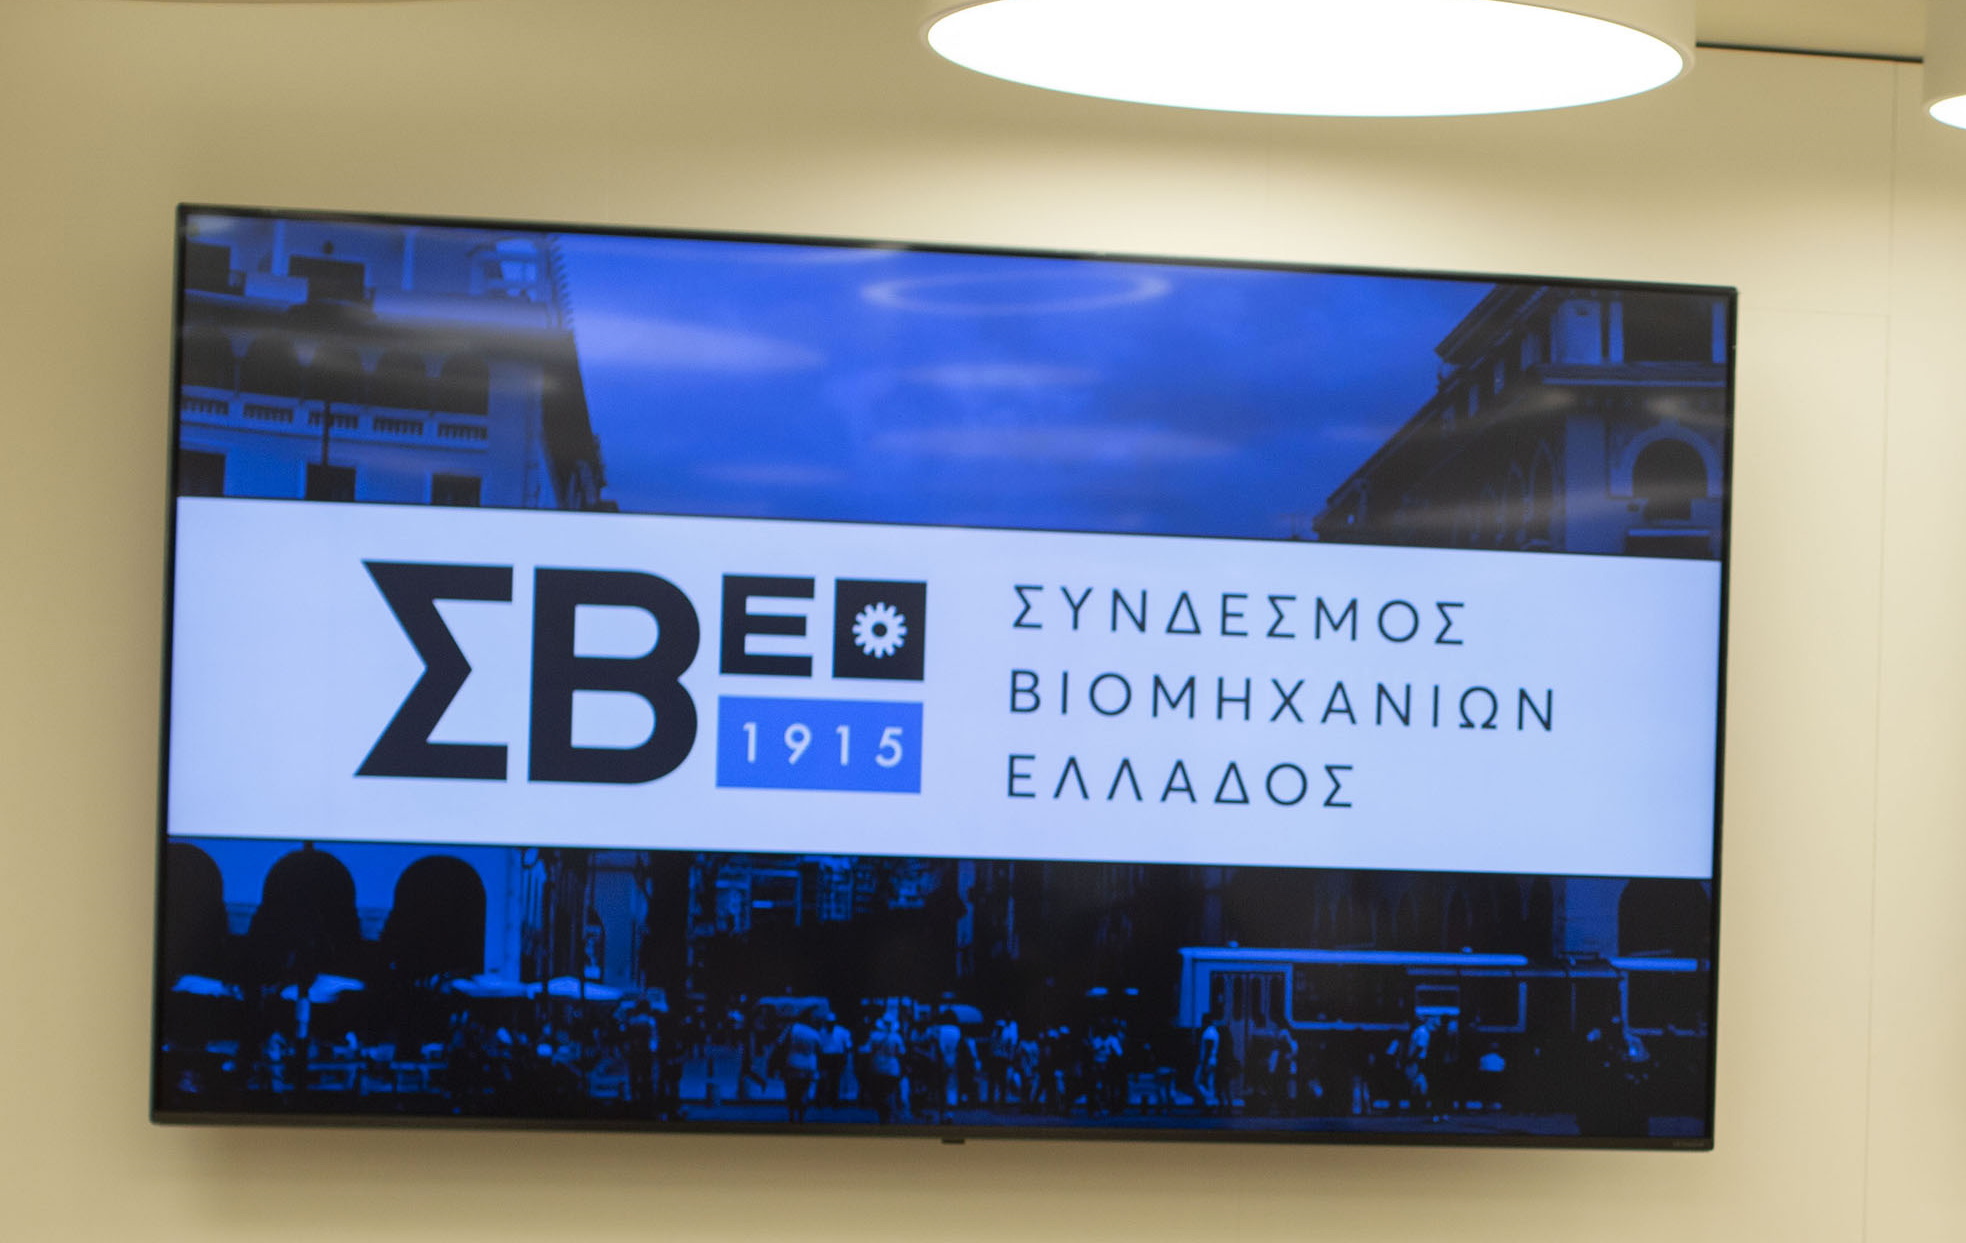 Πρόεδρος ΣΒΕ: Η ελληνική βιομηχανία επανακάμπτει δυναμικά στις αγορές της Νοτιοανατολικής Ευρώπης